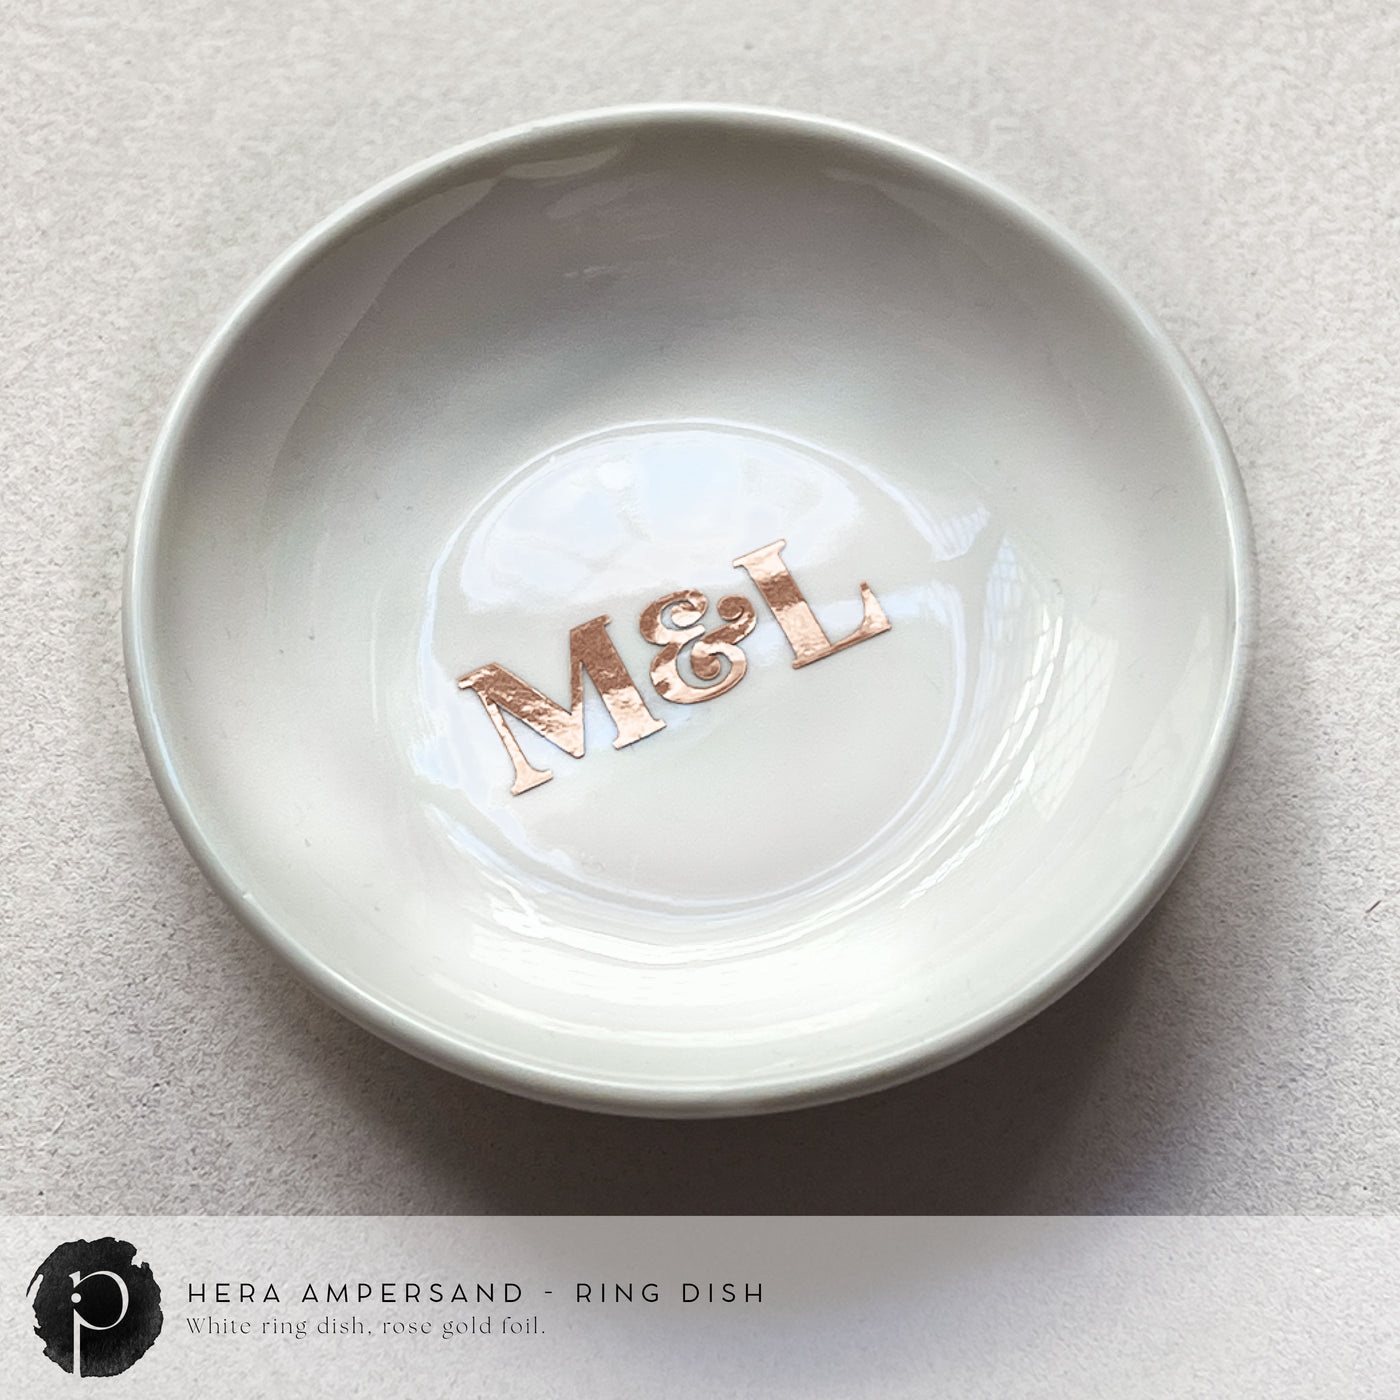 Personalised White Ring Dish - Hera Ampersand